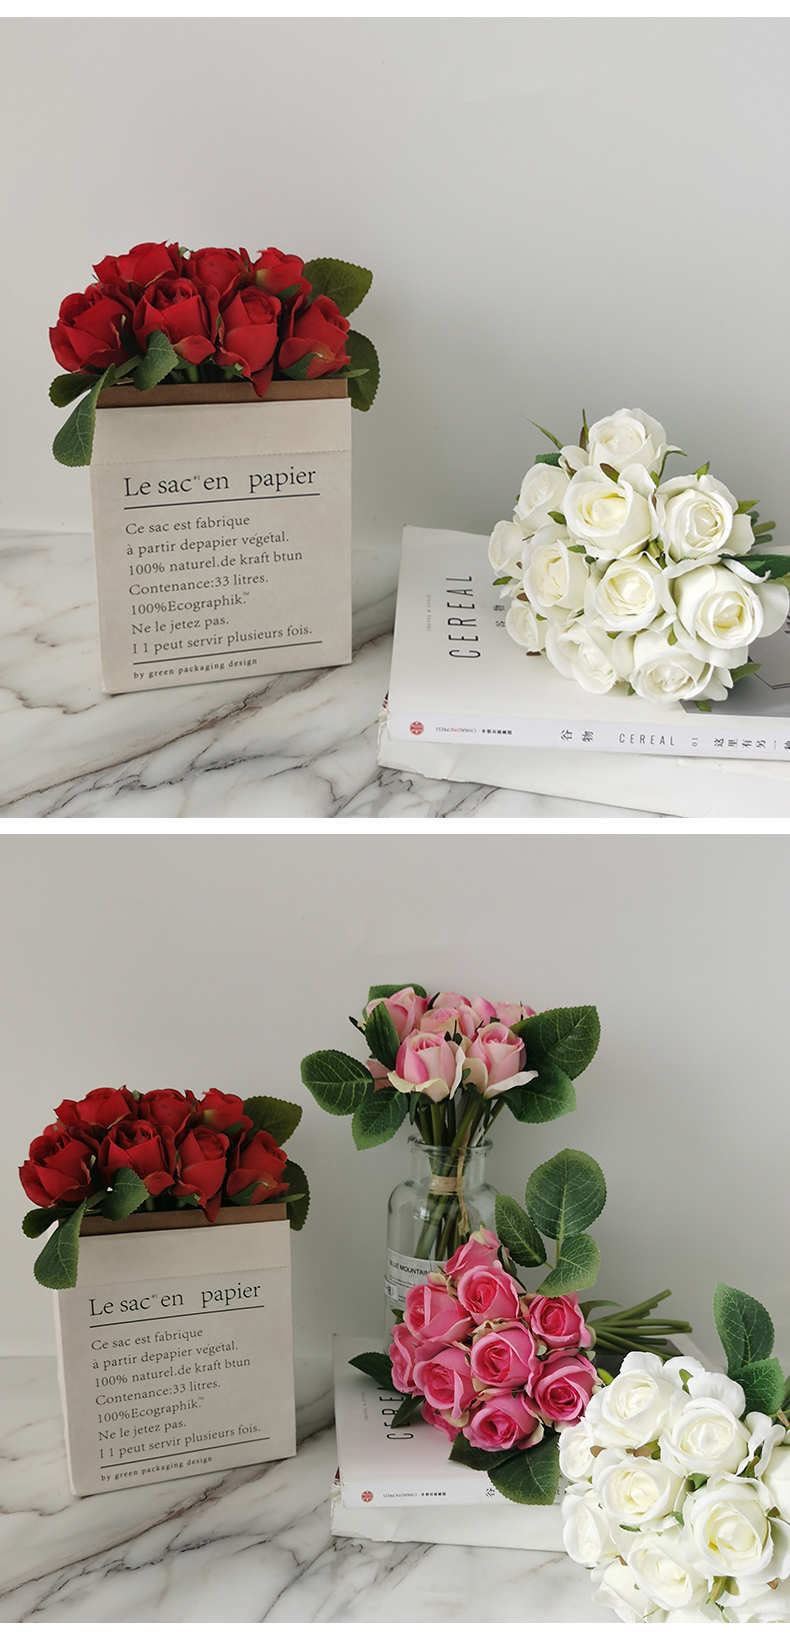 Искусственные розы, букеты цветов, свадьба, домашняя вечеринка, декор для стола, объемная подделка, искусственный цветок розы